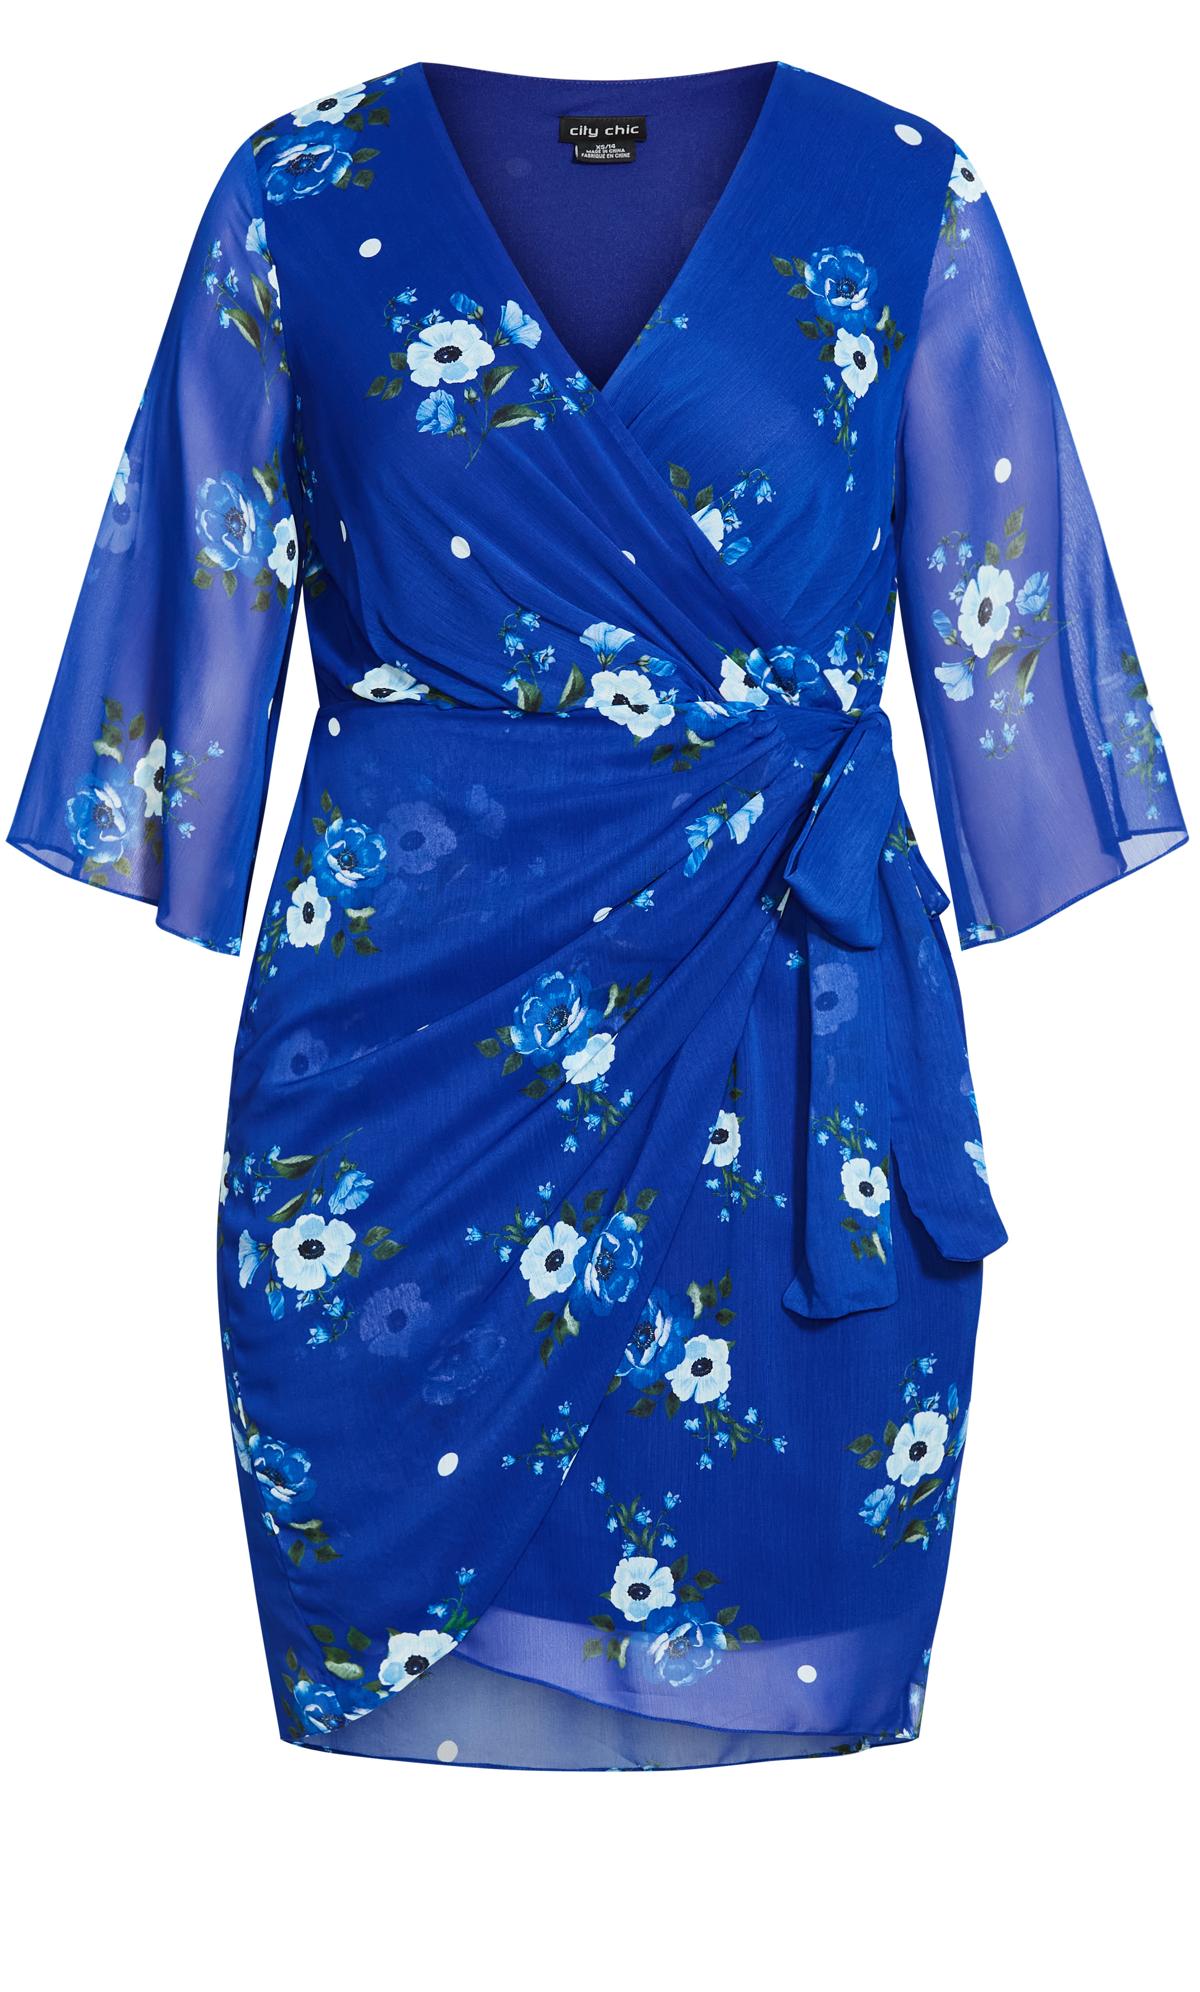 City Chic Blue Floral Print Wrap Dress